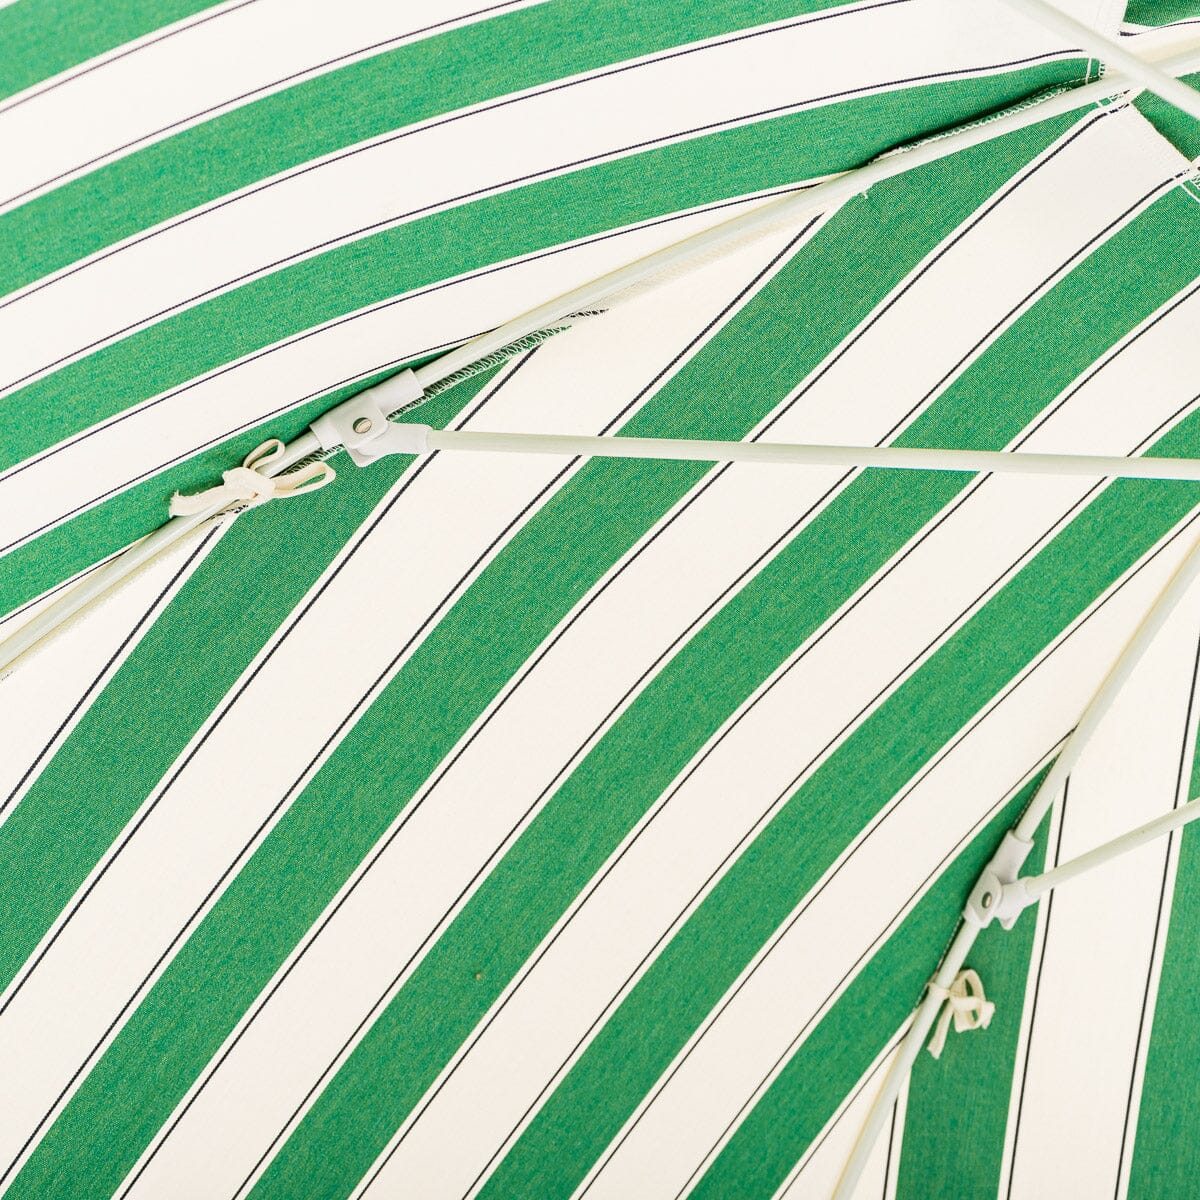 The Patio Umbrella - STAUD Stripe Patio Umbrella Business & Pleasure Co Aus 